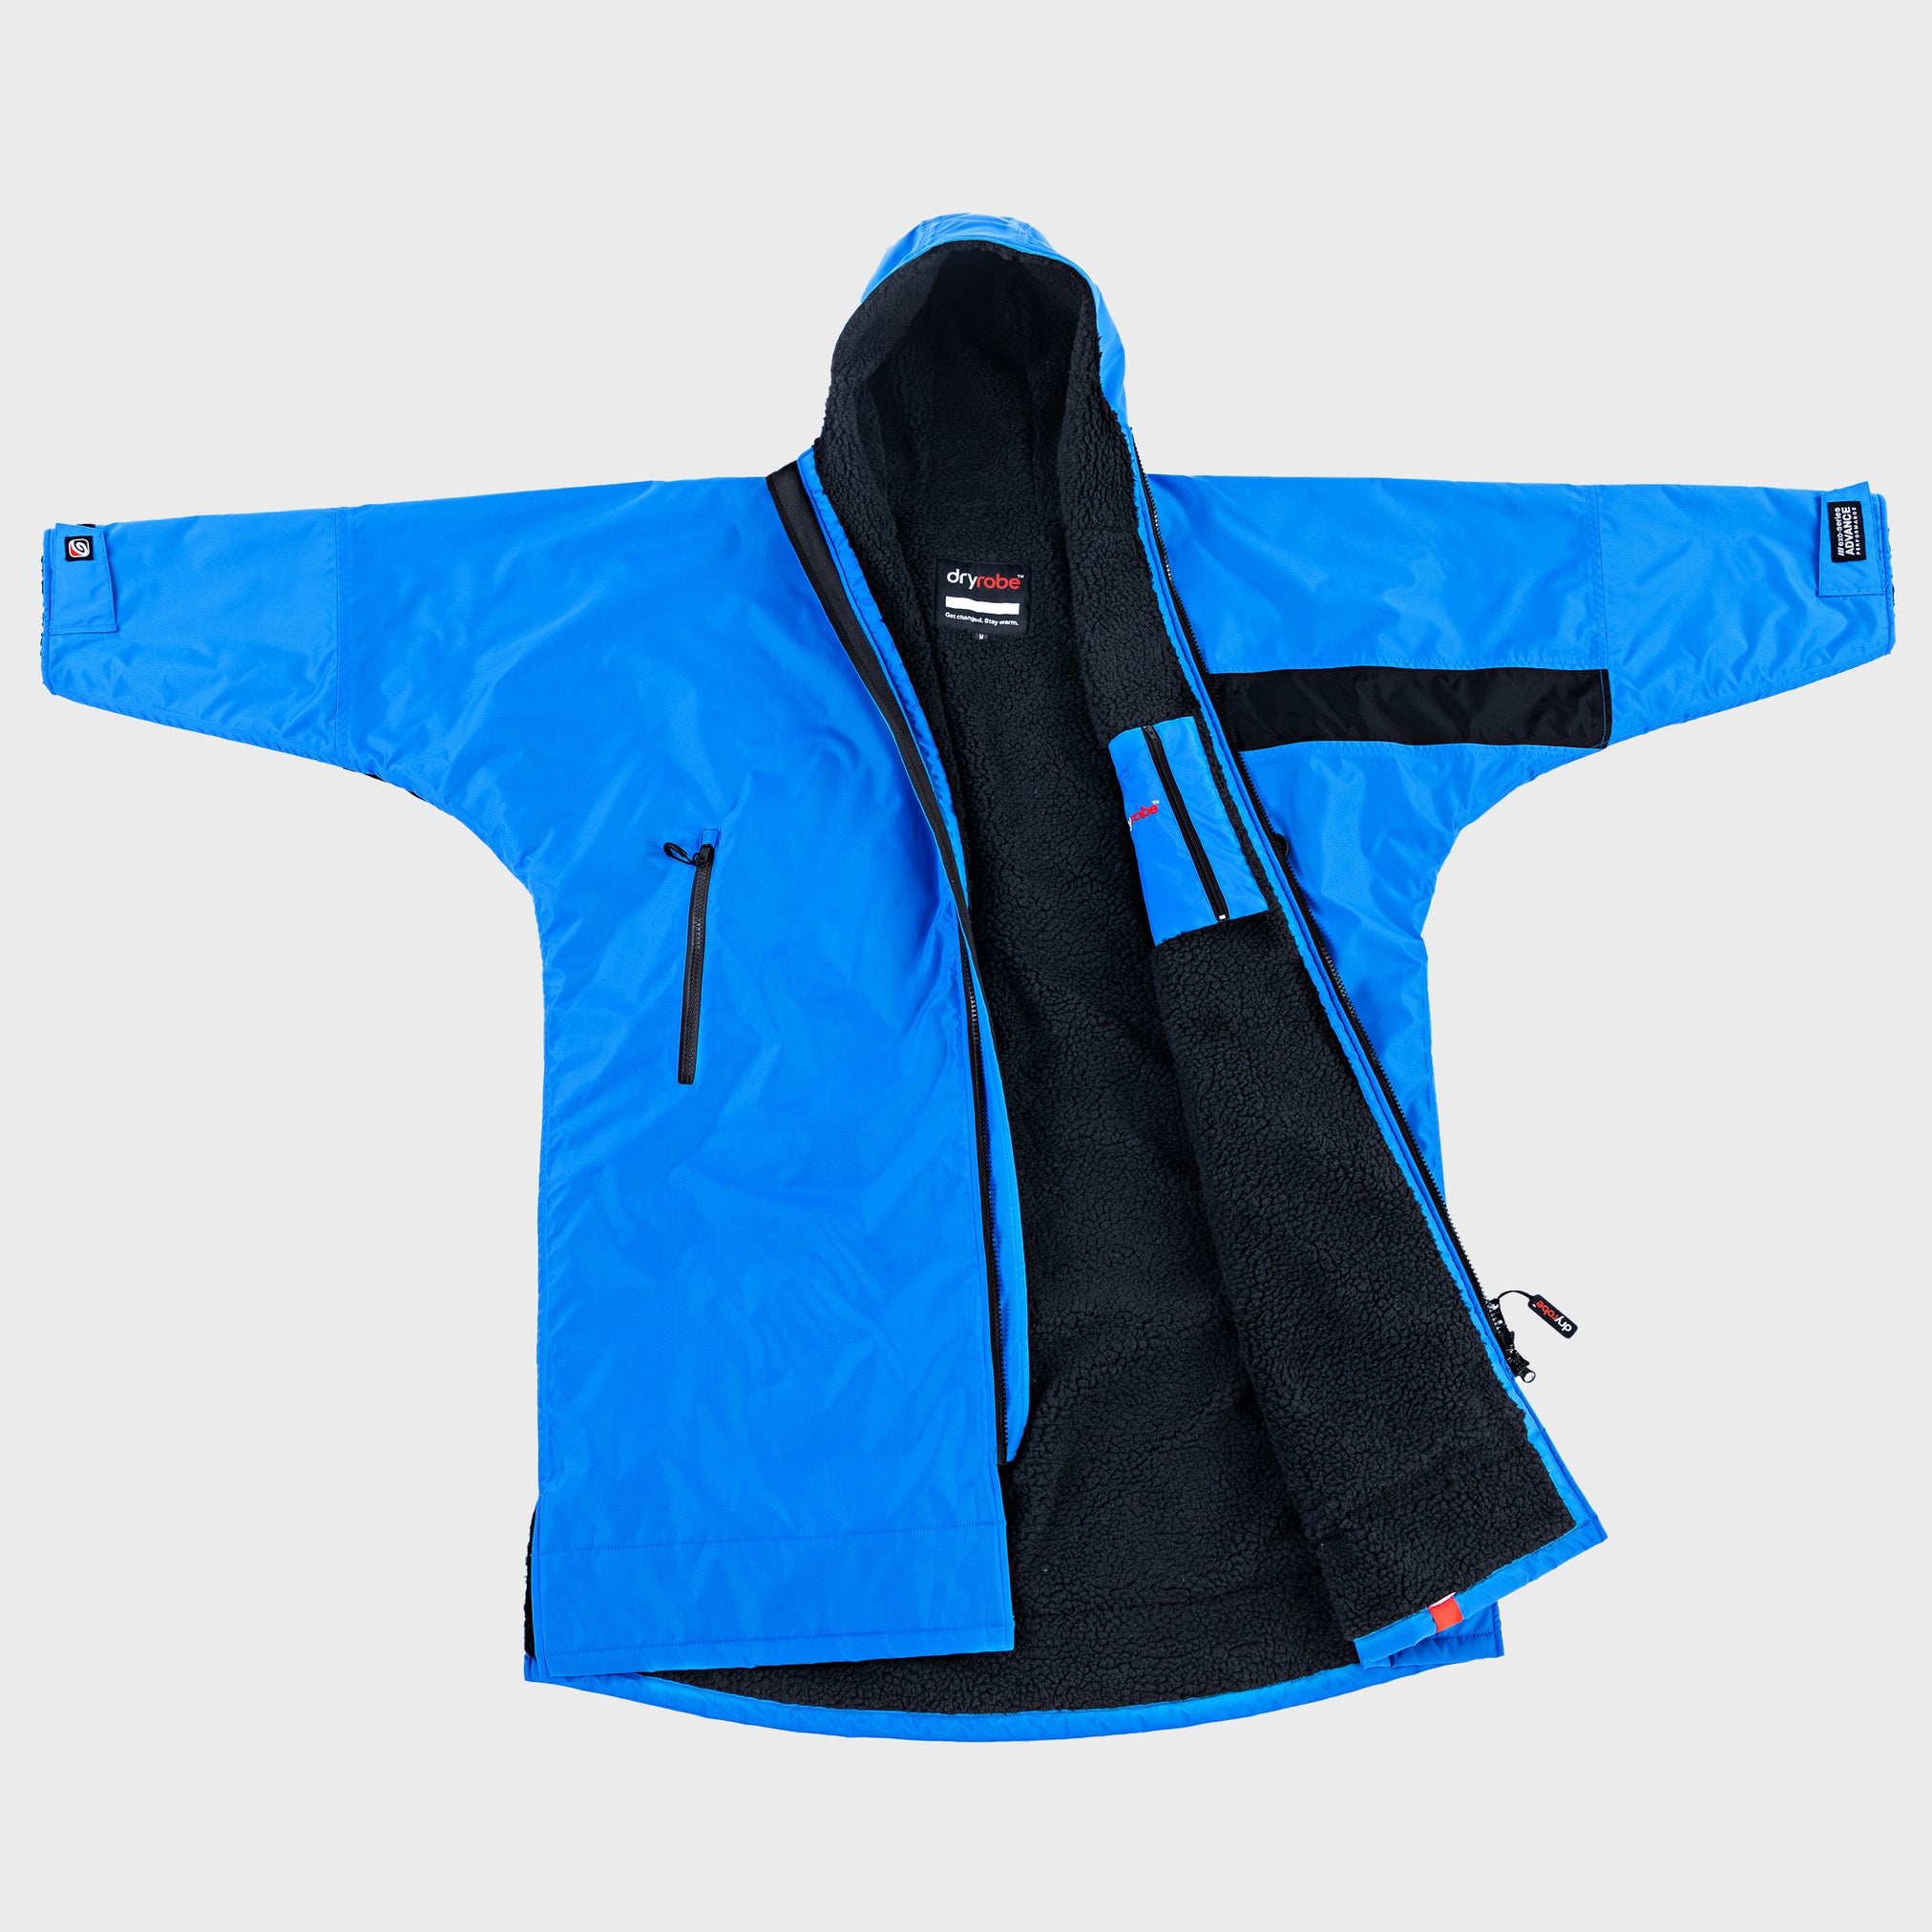  dryrobe advance kids change robe remix range Cobalt blue black